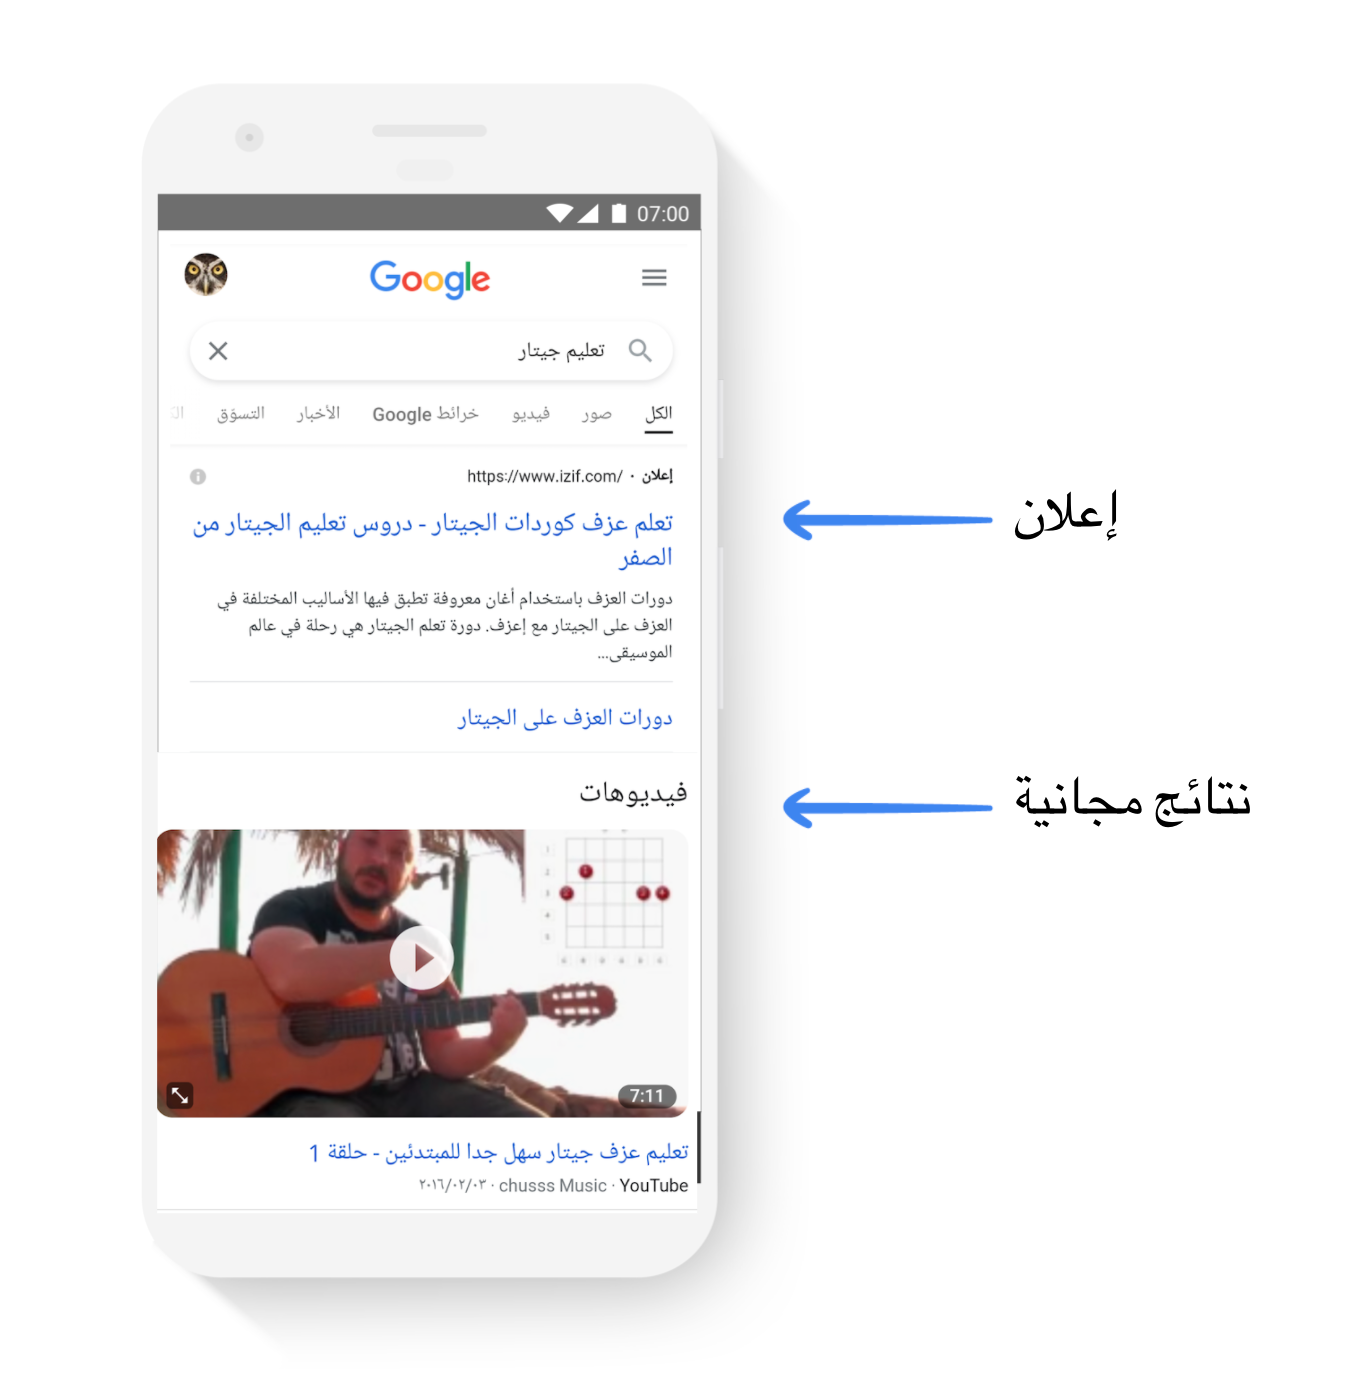 صورة لشاشة موبايل وعليها فيديو لشخص يعزف الموسيقى على الجيتار